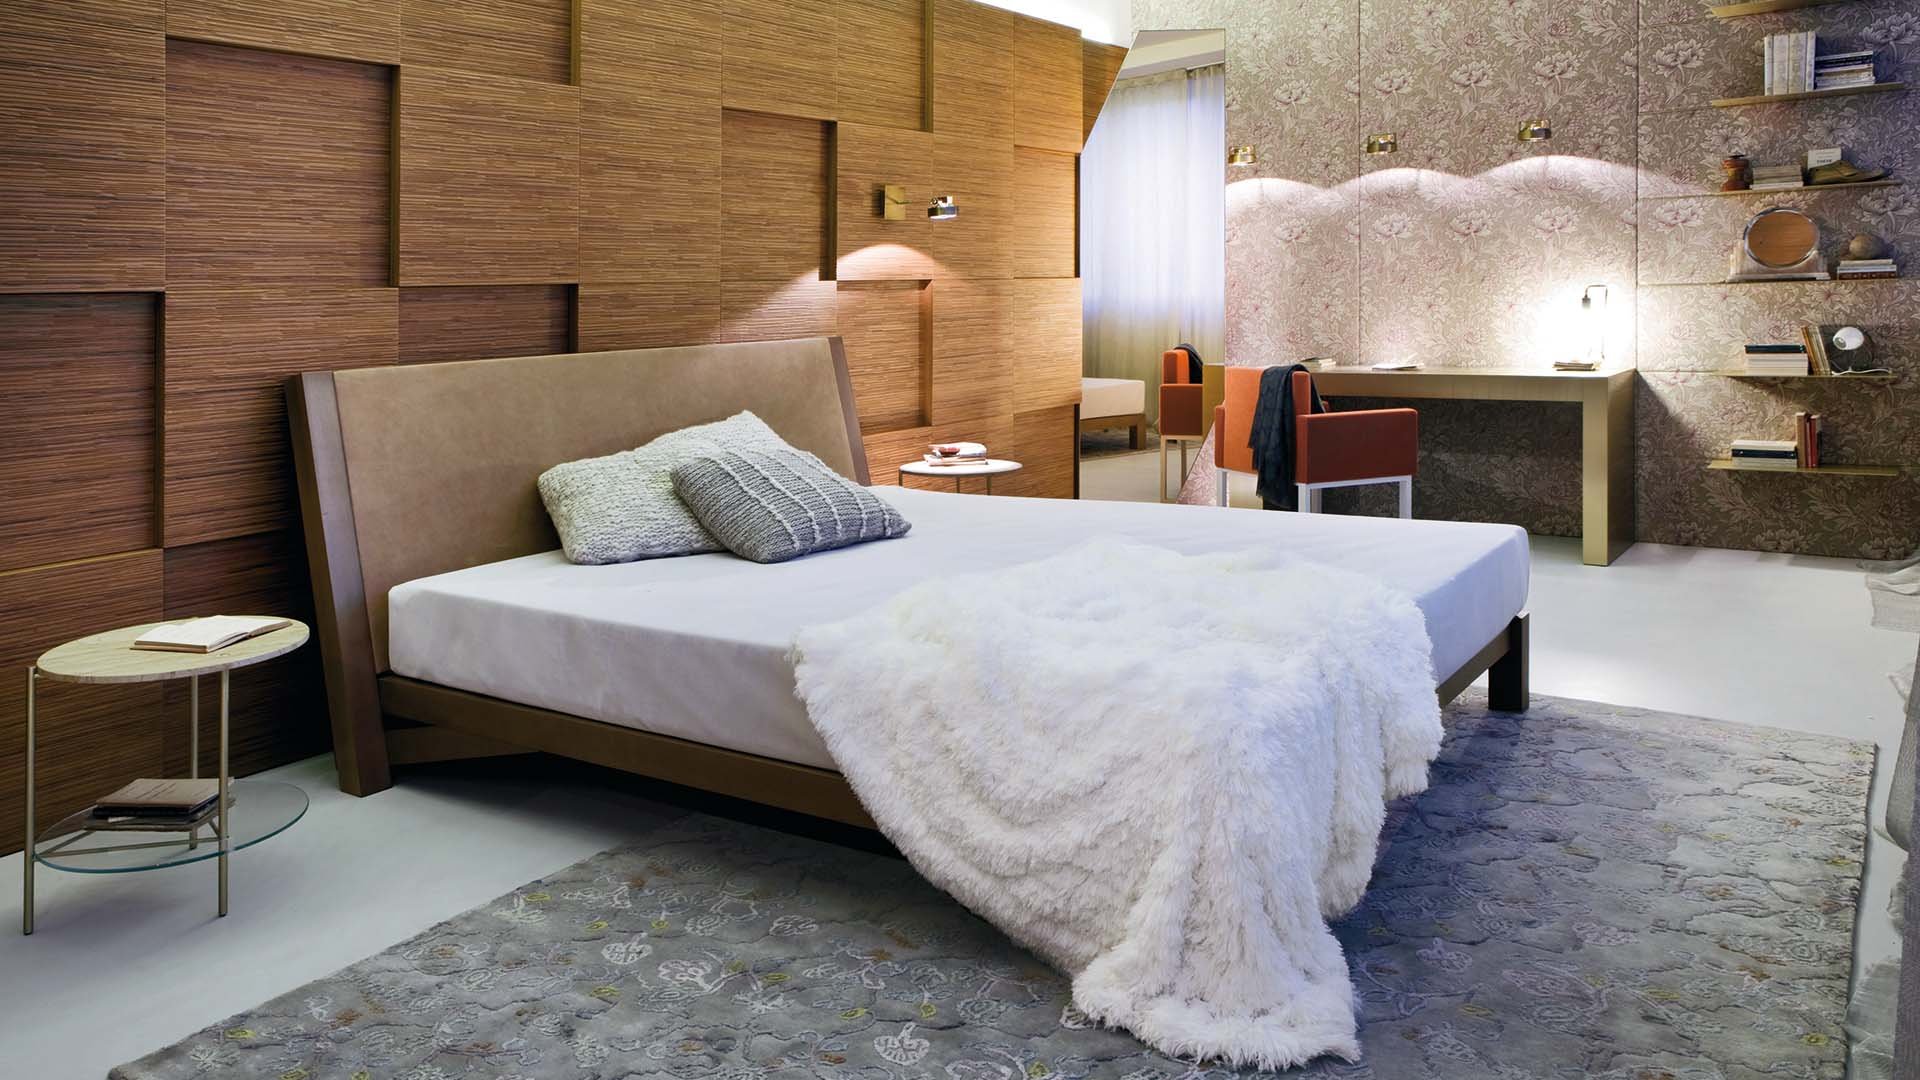 Schlafzimmer sind der intimste Ort der Regeneration. Hier sollte alles passen. Gedeckte Farben, viel natür­liche Materialien, flauschige Stoffe, Wandpaneele zur Akustikdämmung, wie von laurameroni.com

